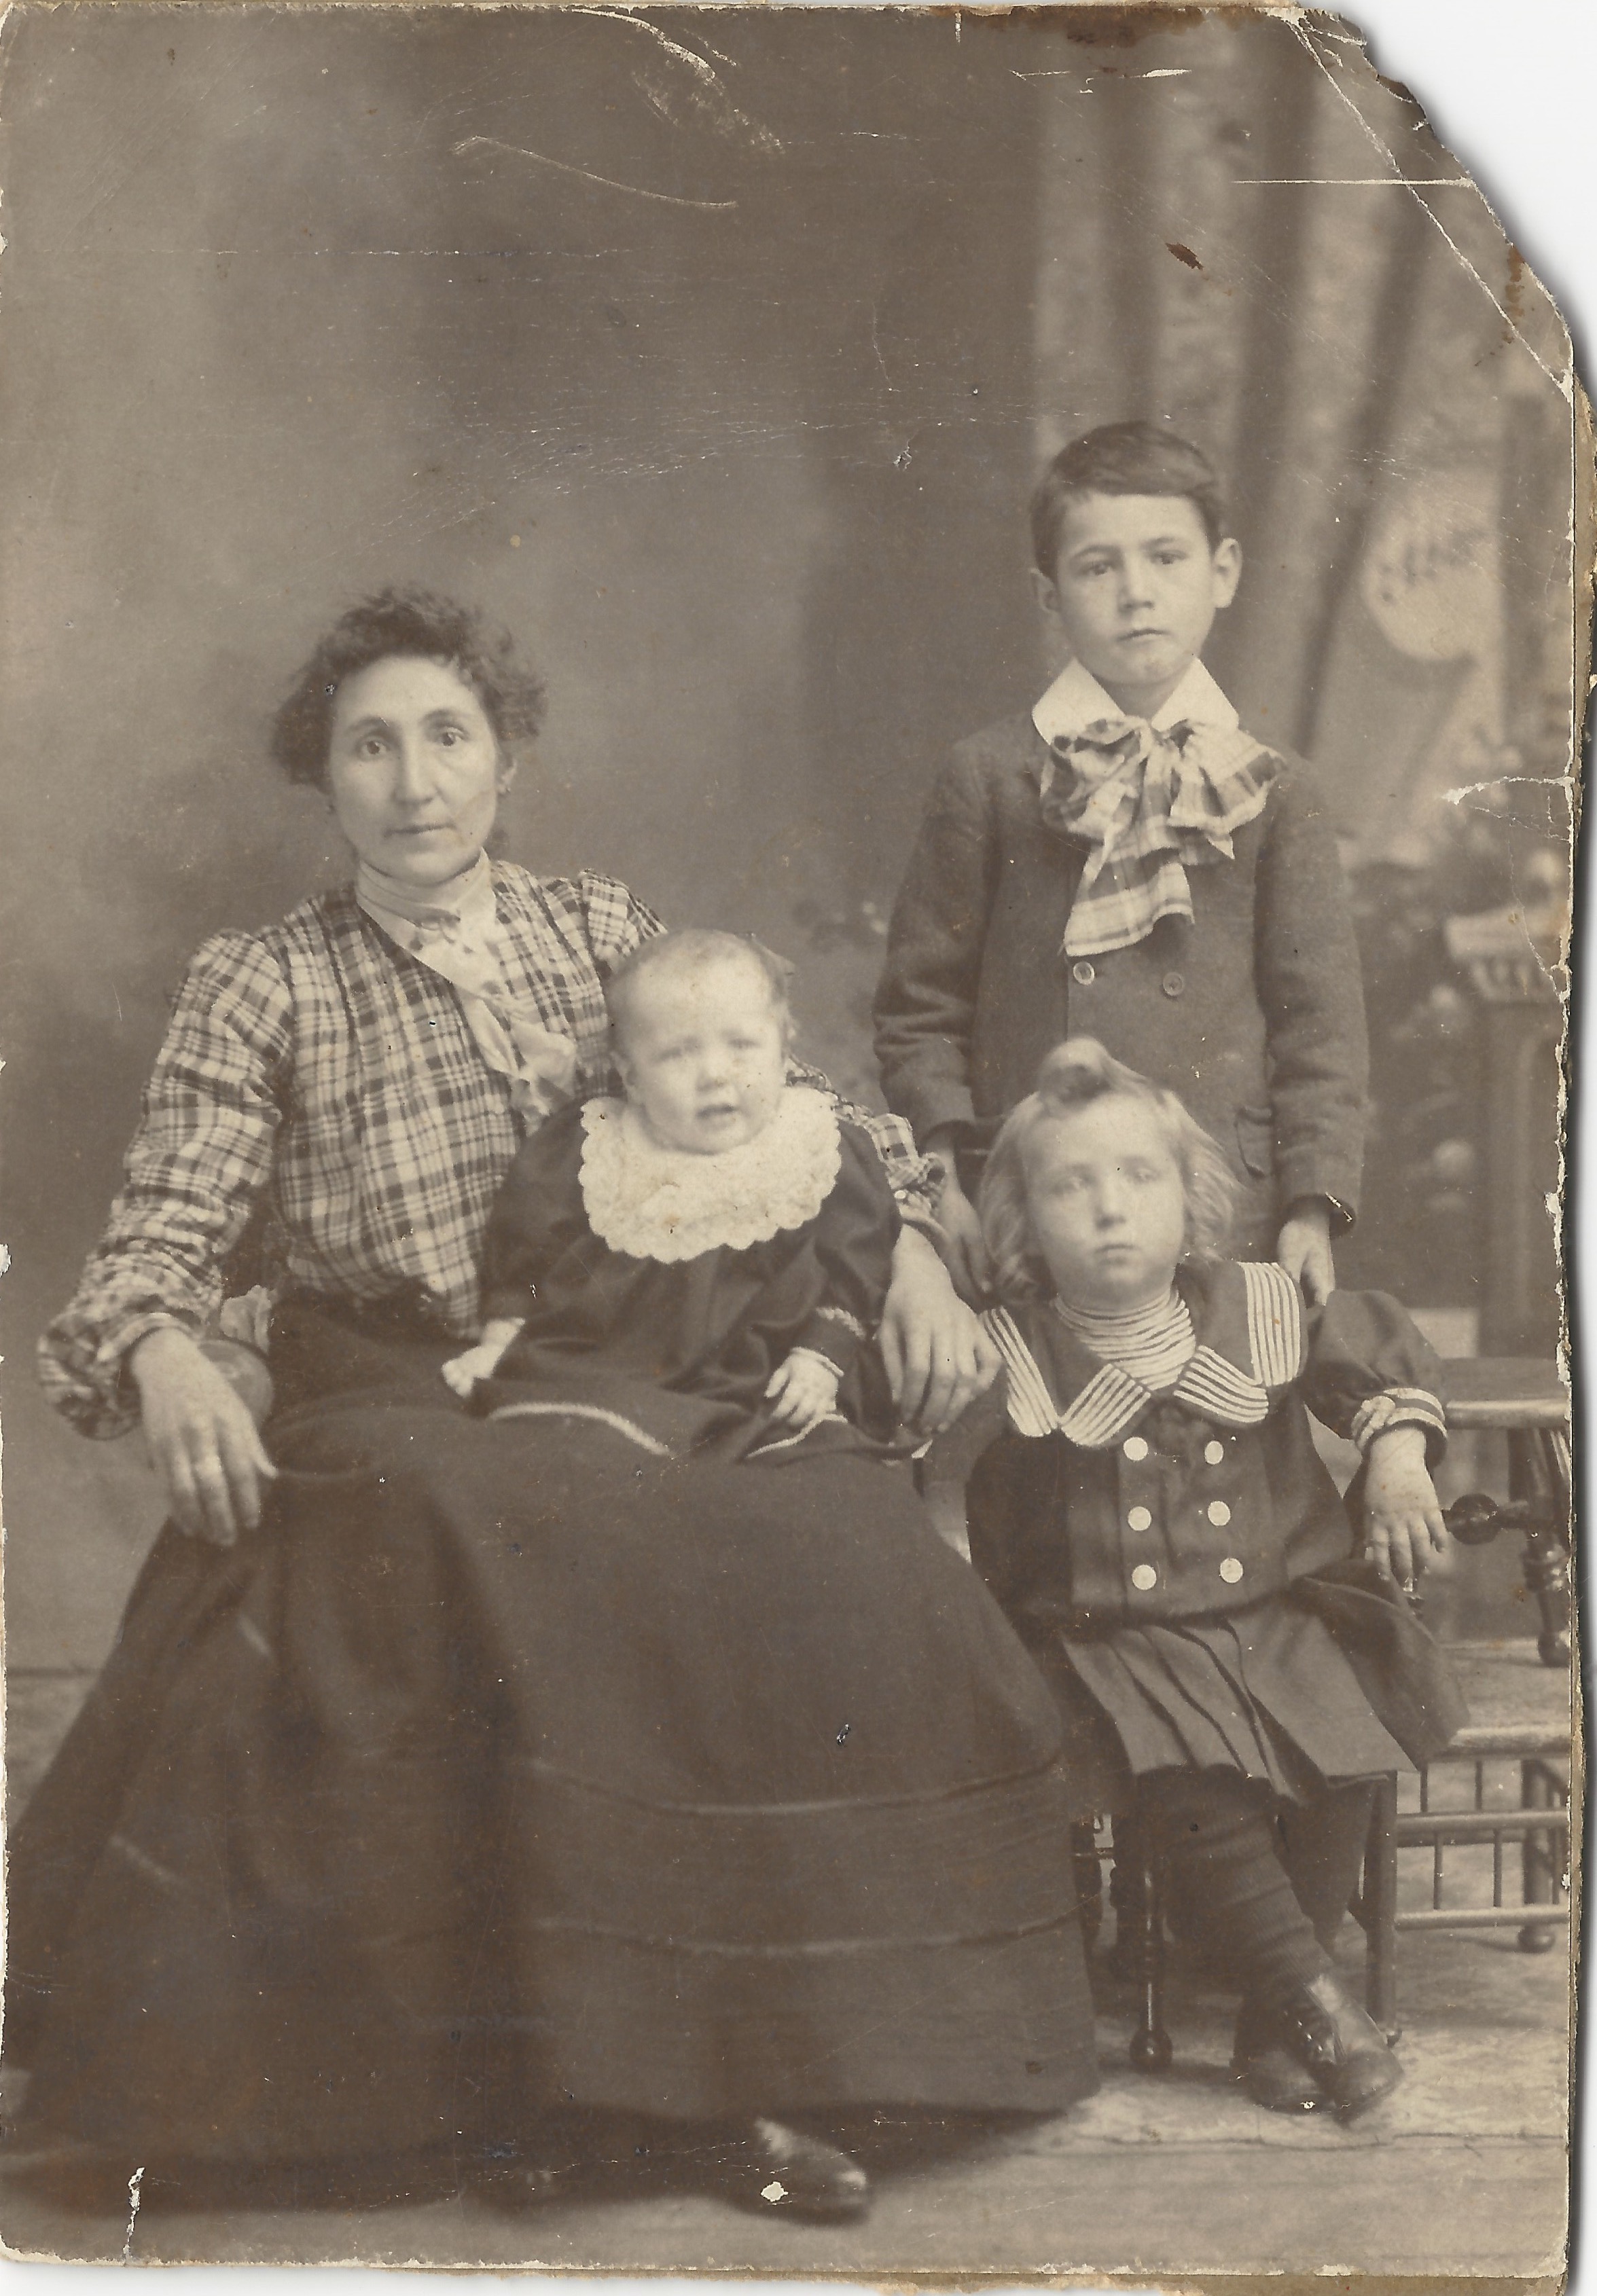 Cécile Gagnon Lizette avec trois de ses enfants. Debout John, l'aîné né en 1894, qui pourrait avoir 6 ans, ce qui daterait la photo de 1900 environ.  L'enfant assis à droite serait alors Wilfrid (1897-1900) et le bébé Pauline-Blanche (1899-1901). 